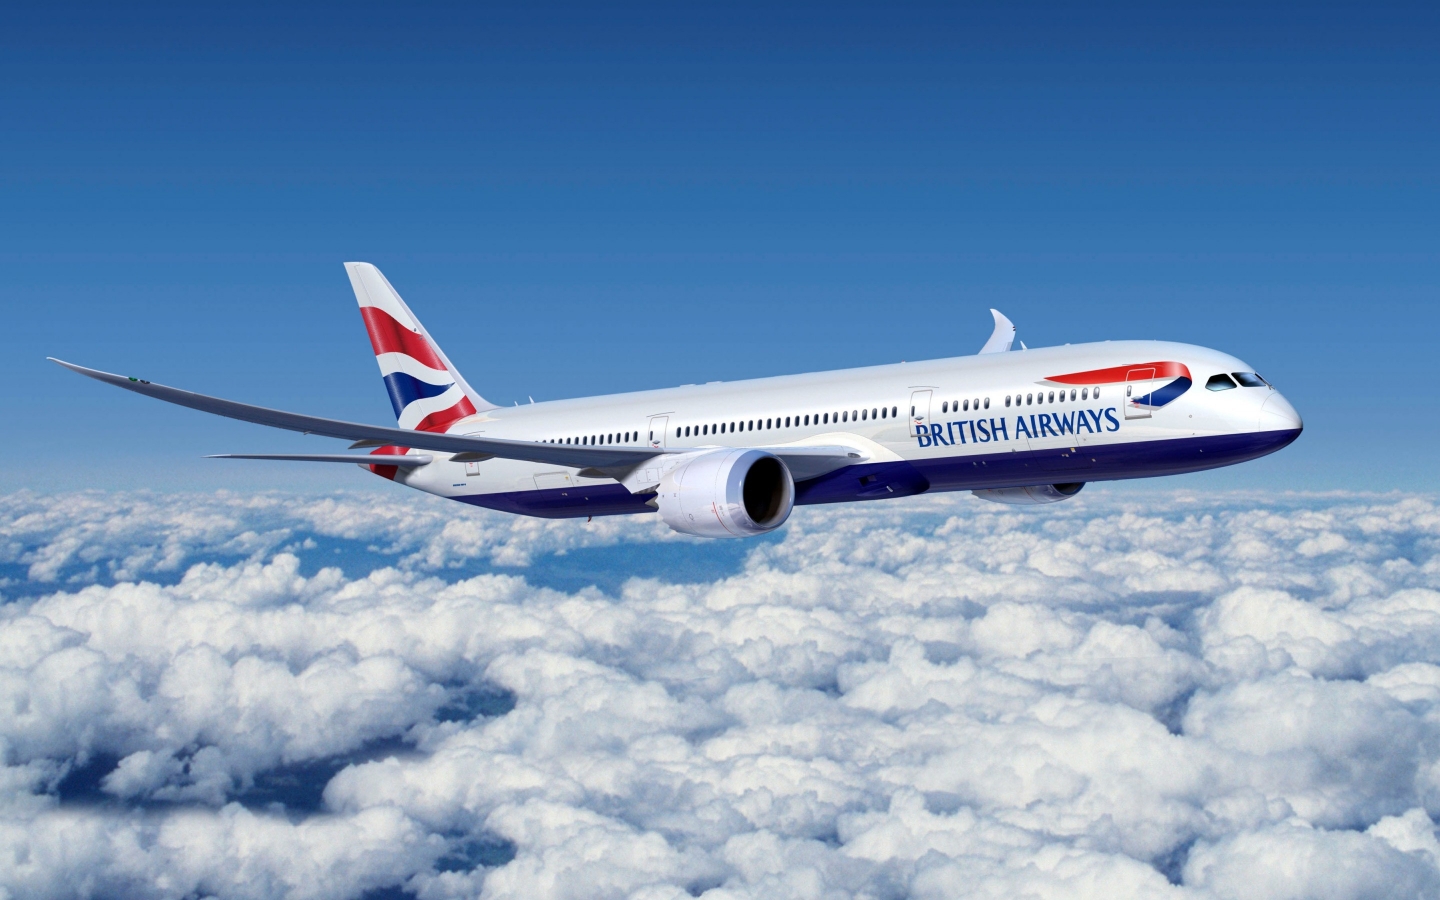 Boeing 777 British Airways for 1440 x 900 widescreen resolution